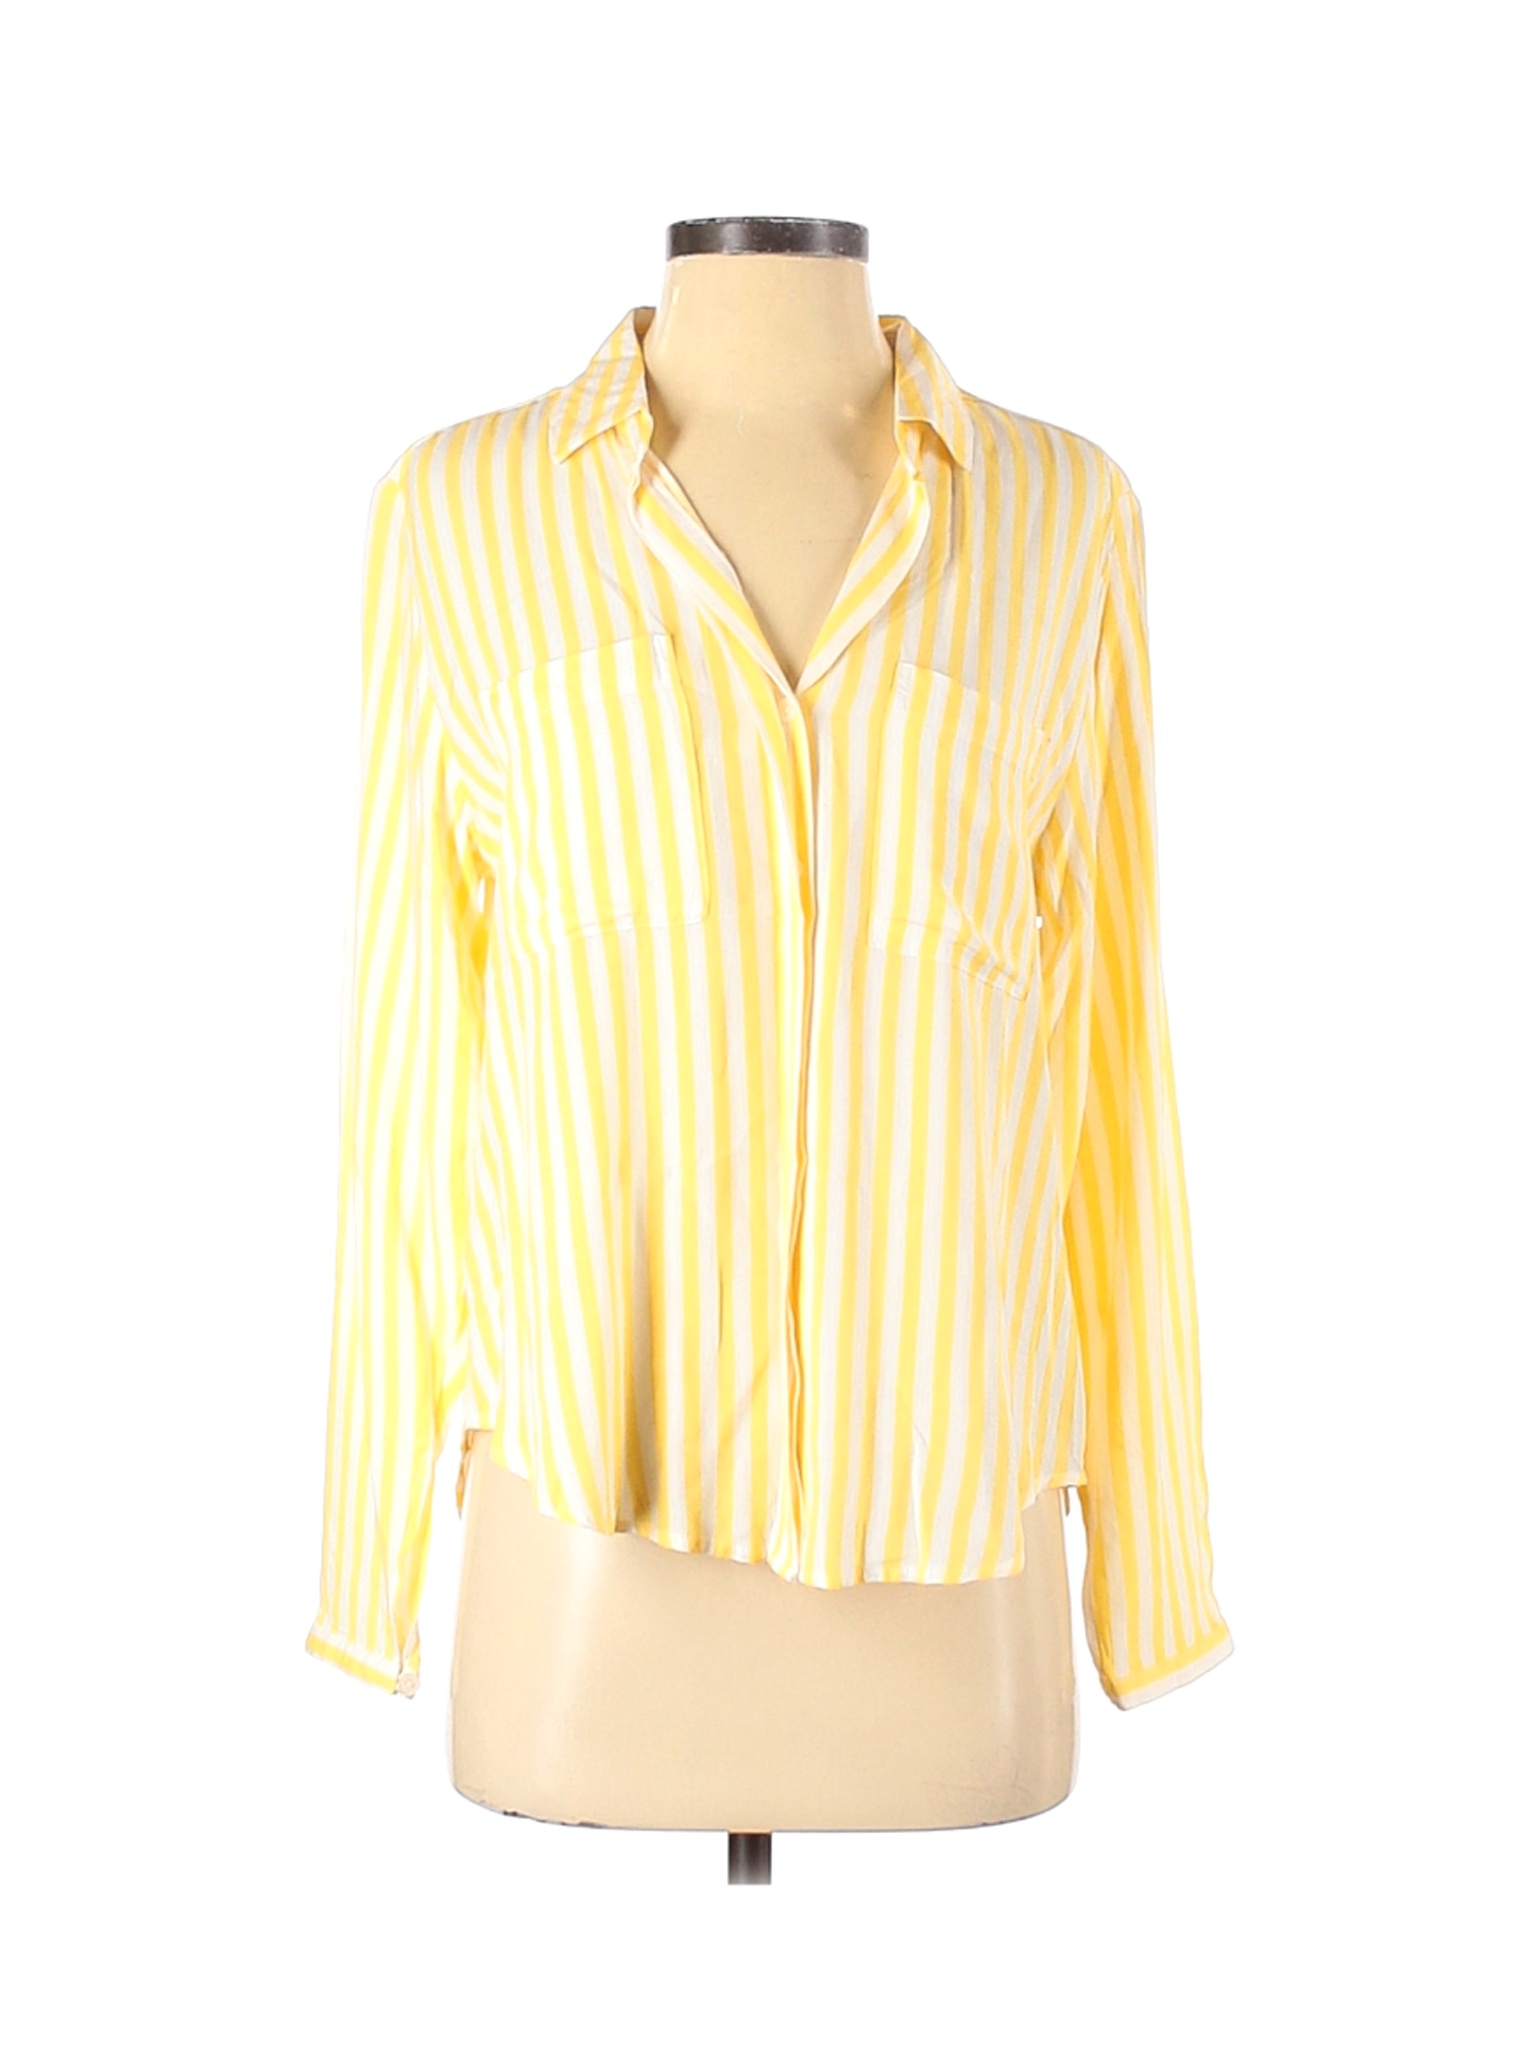 Velvet Heart Women Yellow Long Sleeve Blouse S | eBay